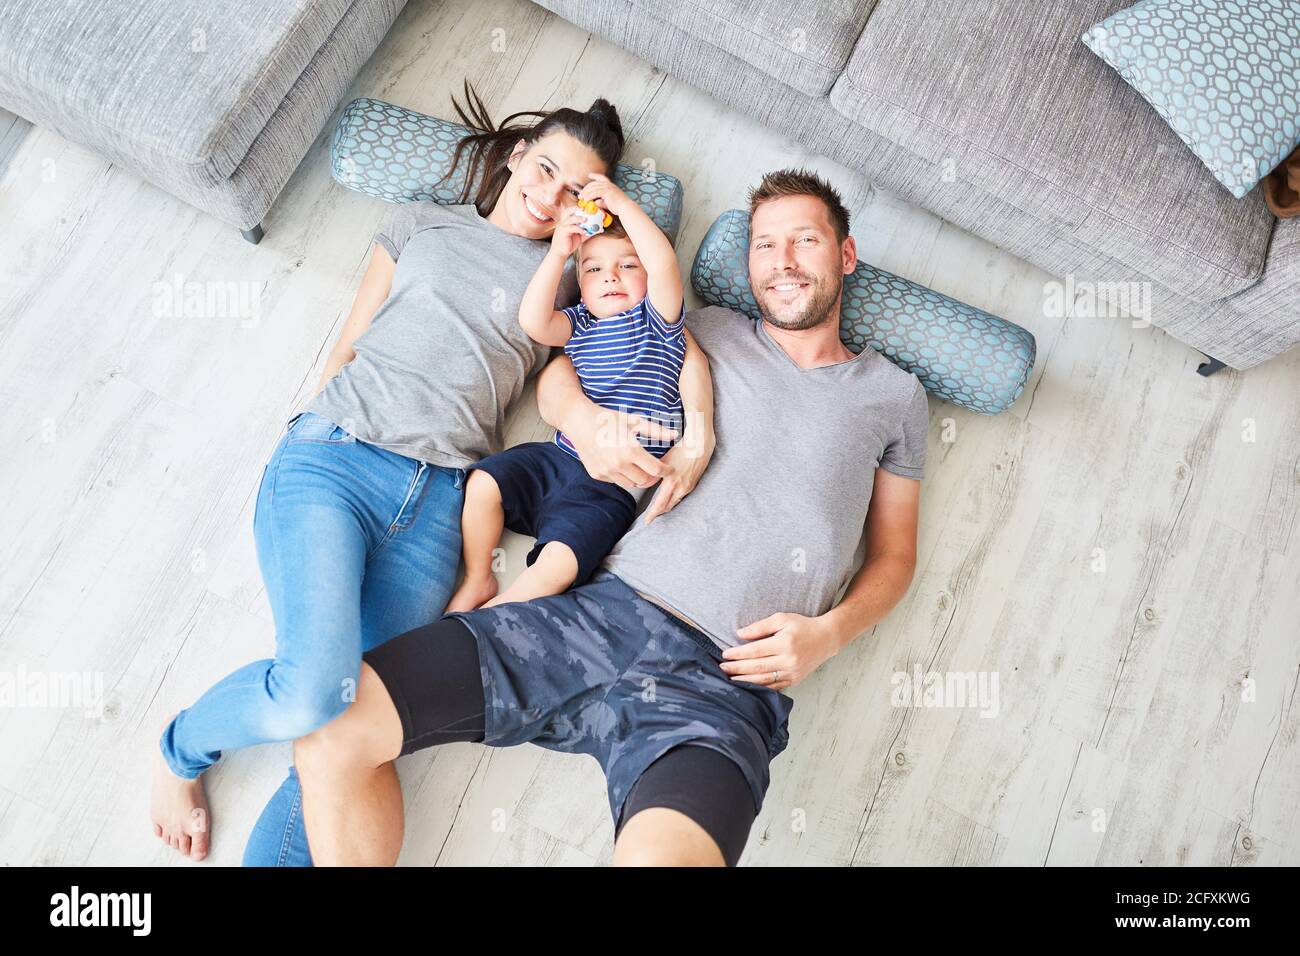 Les parents et les enfants se trouvent sur le sol dans la salle de séjour chambre en tant que petite famille heureuse Banque D'Images